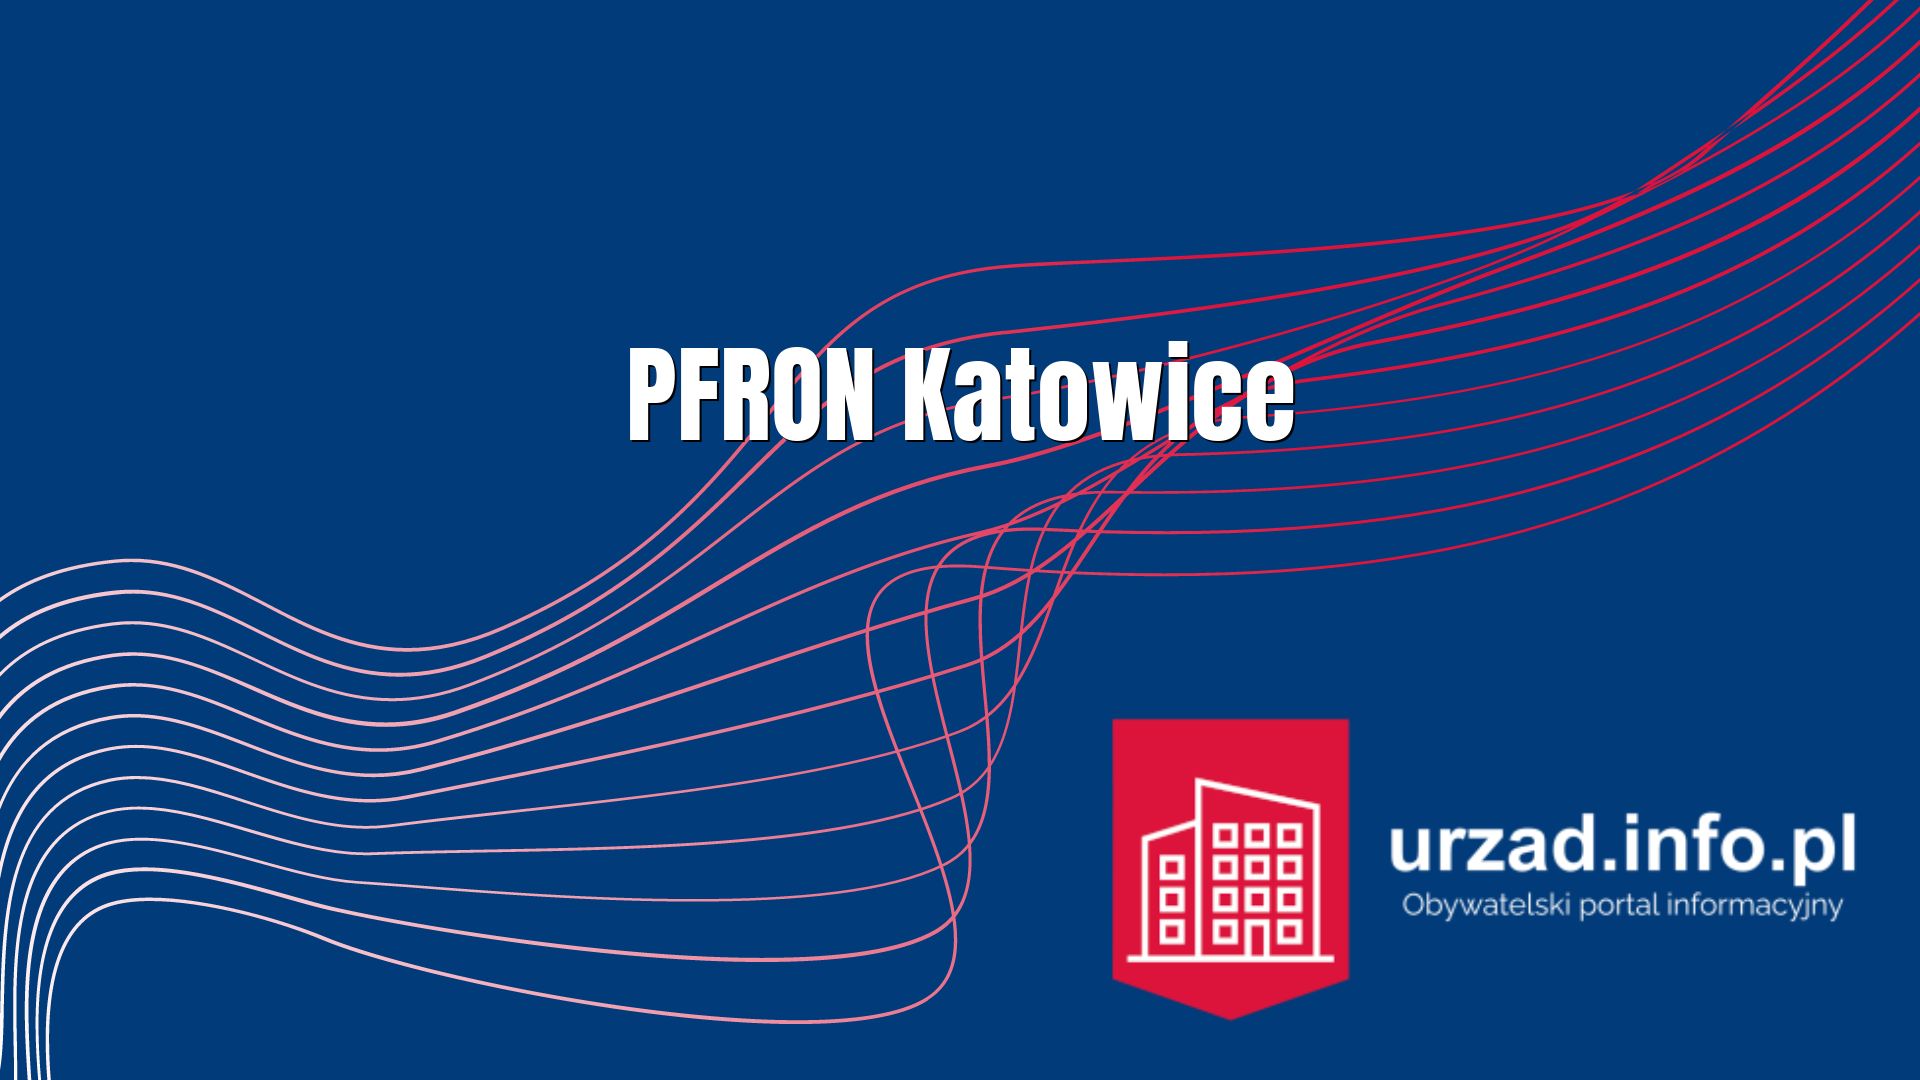 PFRON Katowice – Państwowy Fundusz Rehabilitacji Osób Niepełnosprawnych